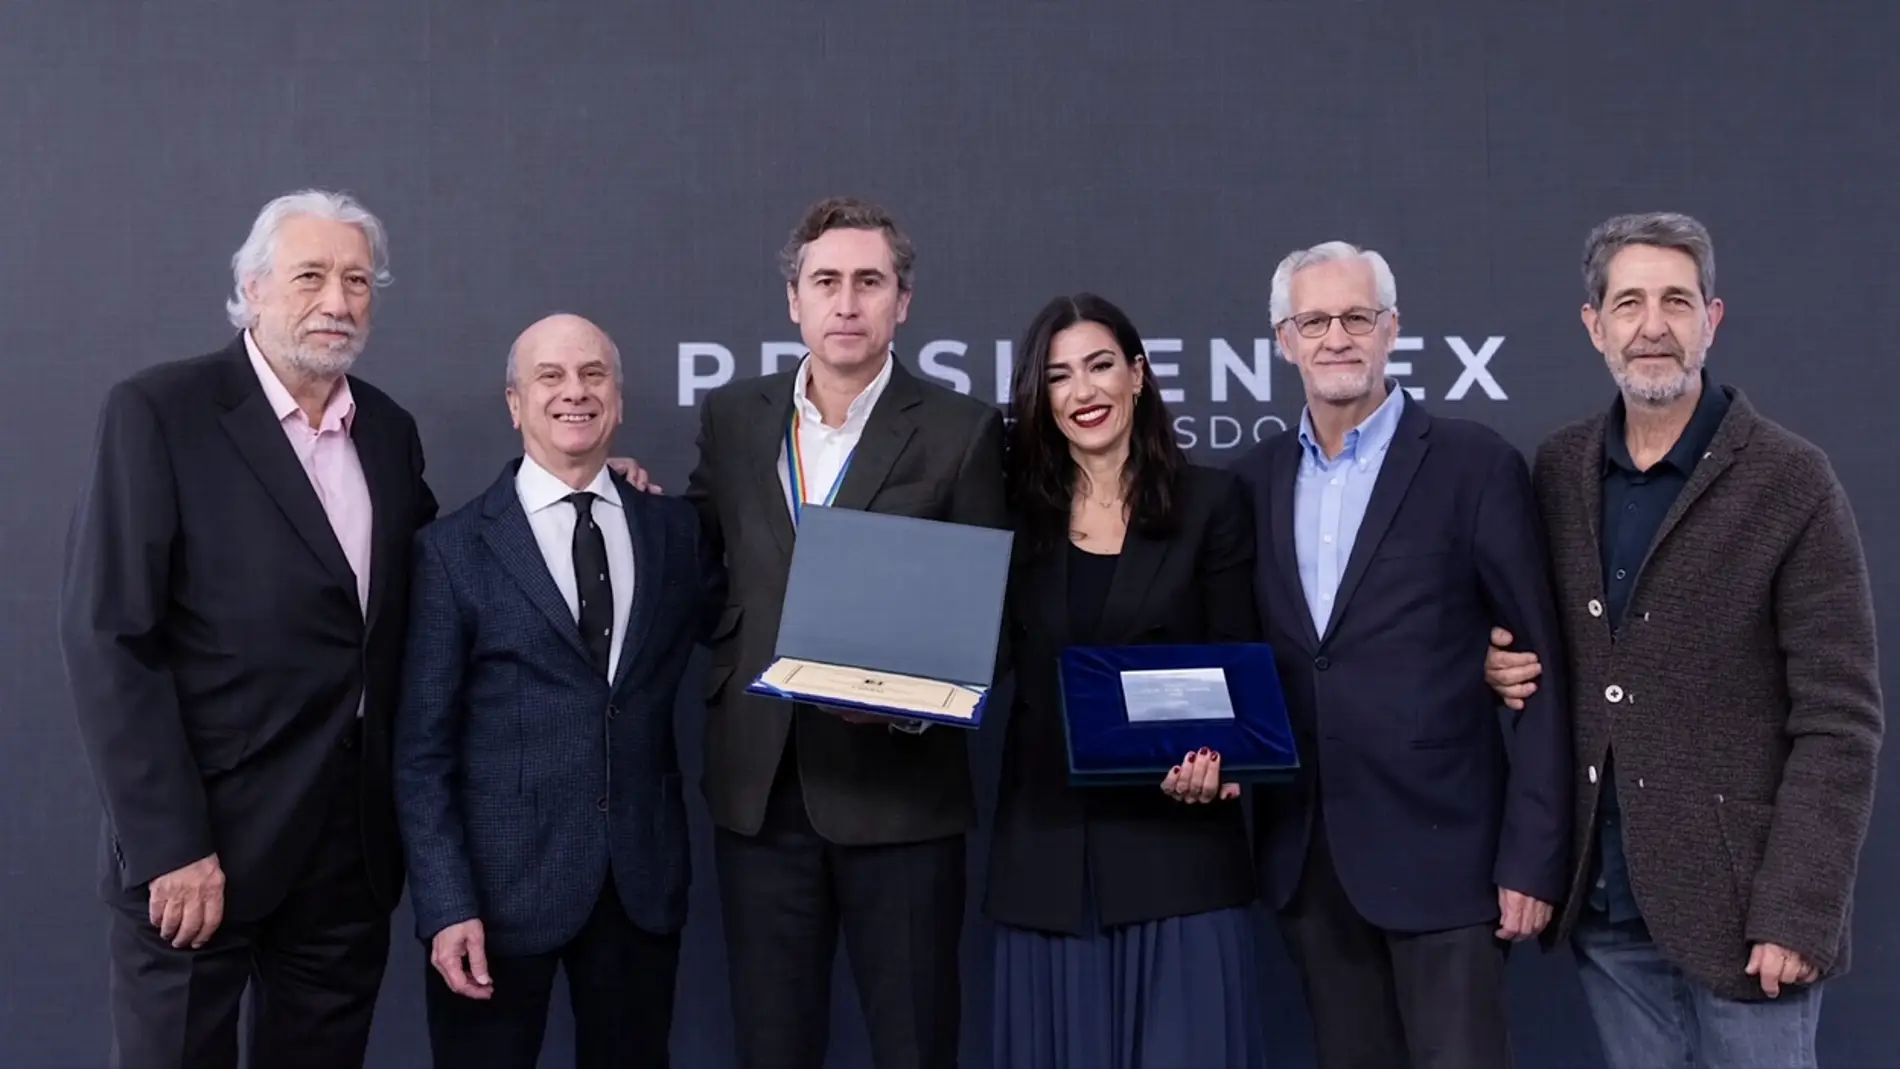 Presidentex hace entrega a L’Oréal del Premio Miguel Ángel Furones 